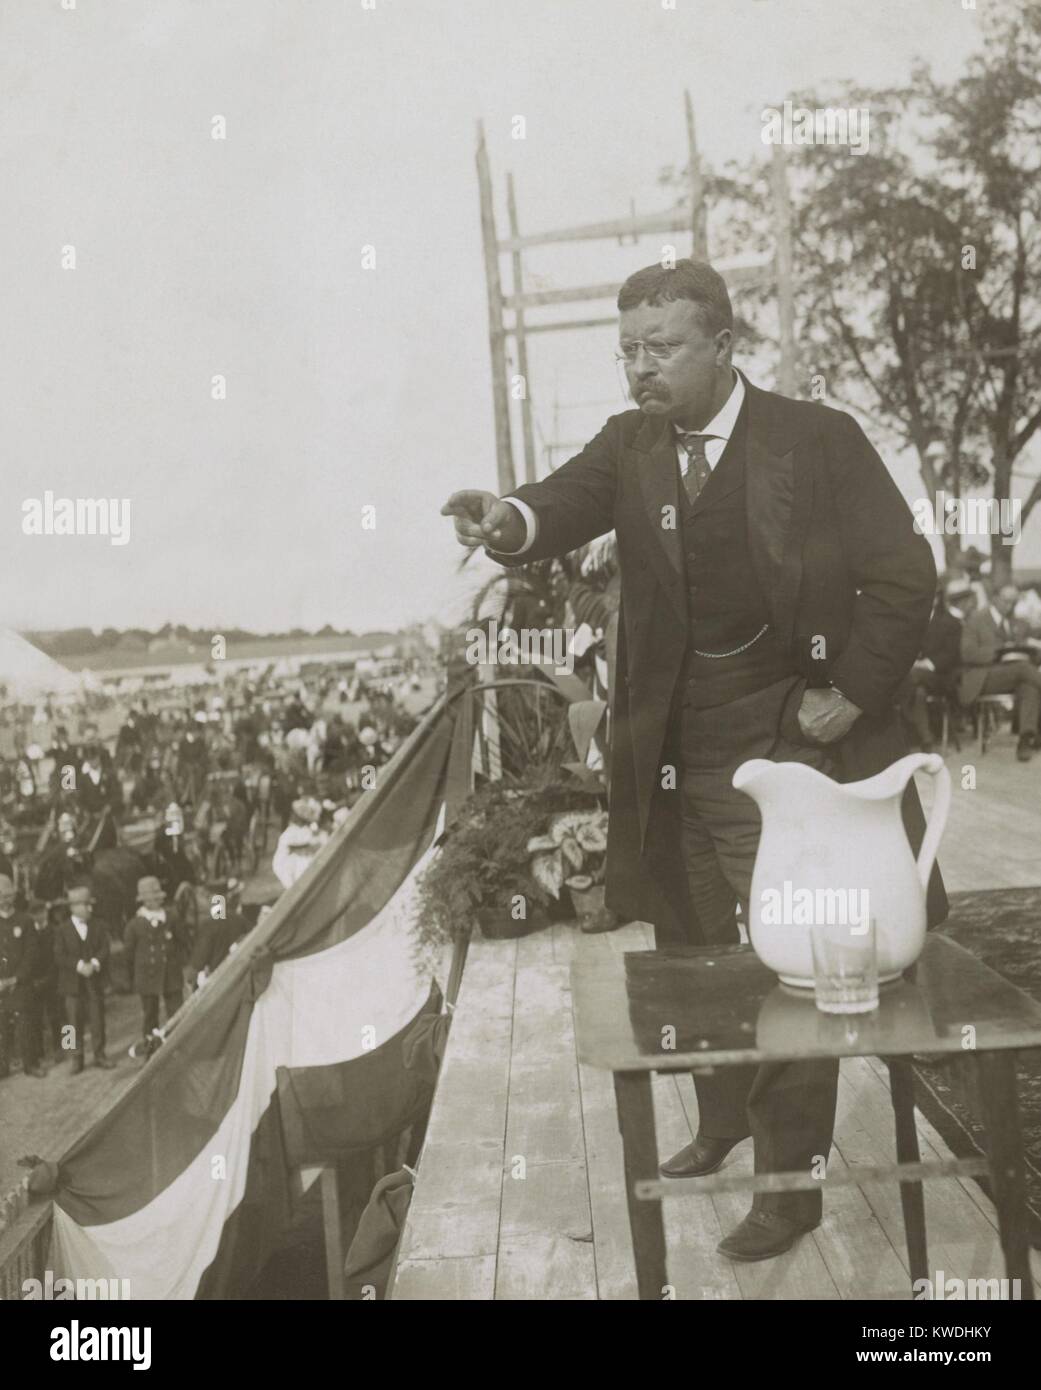 Theodore Roosevelt, eine Rede, Concord, N.H., während seiner New England Tour, 28. August 1902. Vor elektronischer Klangverstärkung, Sprechen in der Öffentlichkeit eine starke Stimme und Gesten. Das Wasser Krug auf die Lautsprecher Plattform benötigte Wasser für trockene Kehlen (BSLOC 2017 6 56) Stockfoto